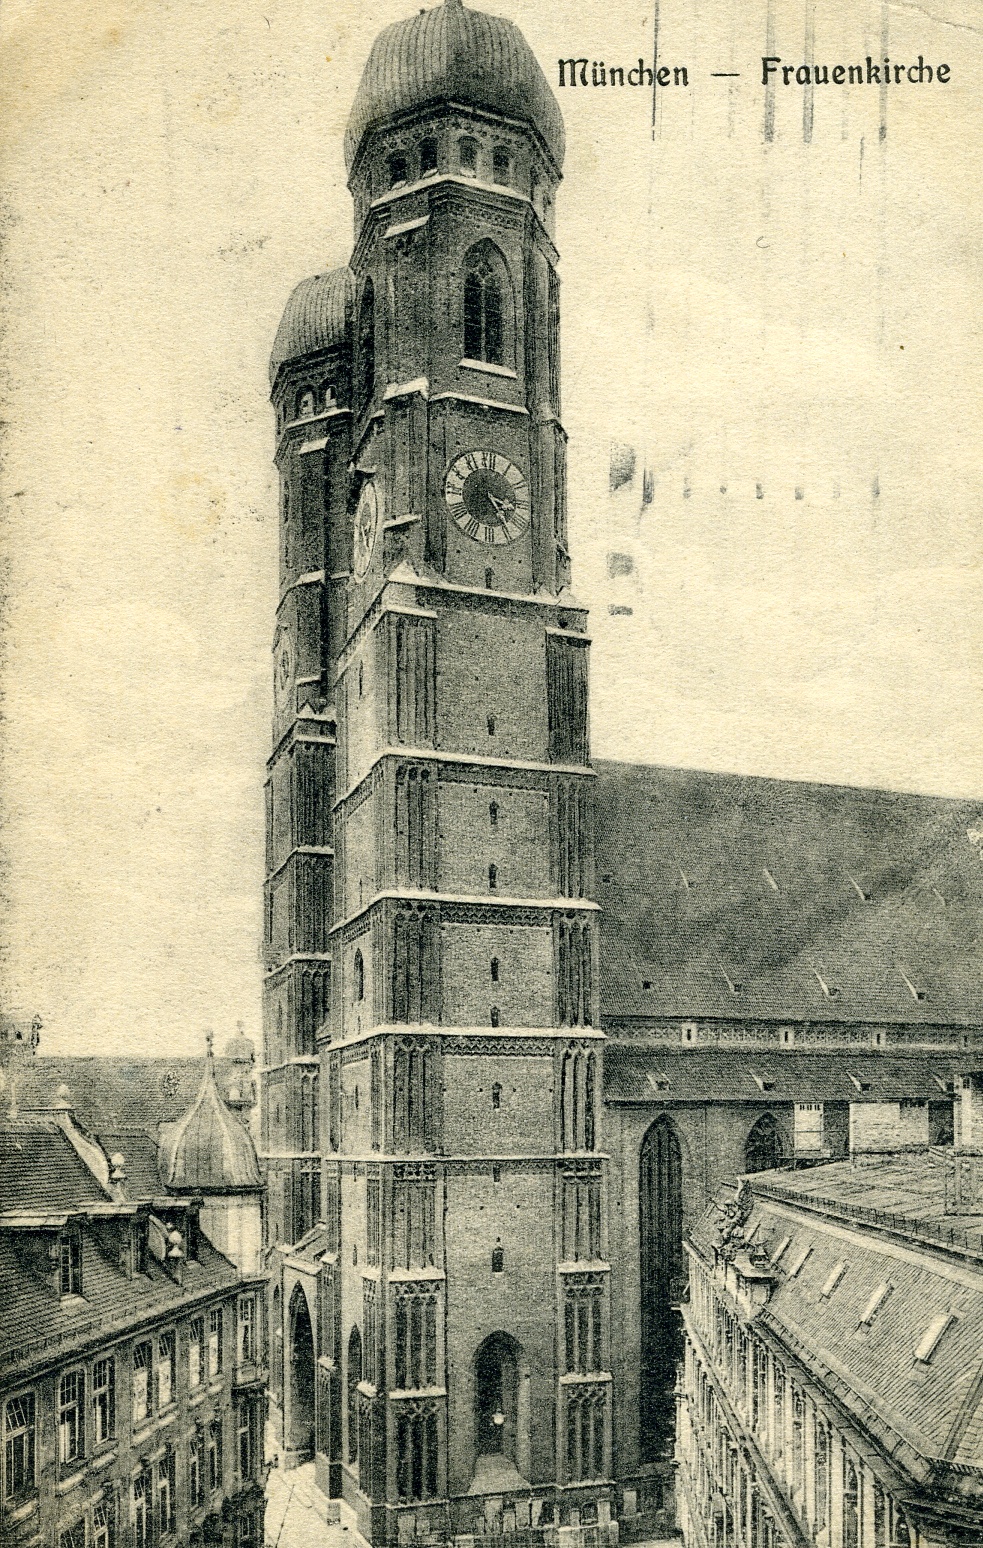 Postkarte aus München 1915 (Historisches Museum der Pfalz, Speyer CC BY)